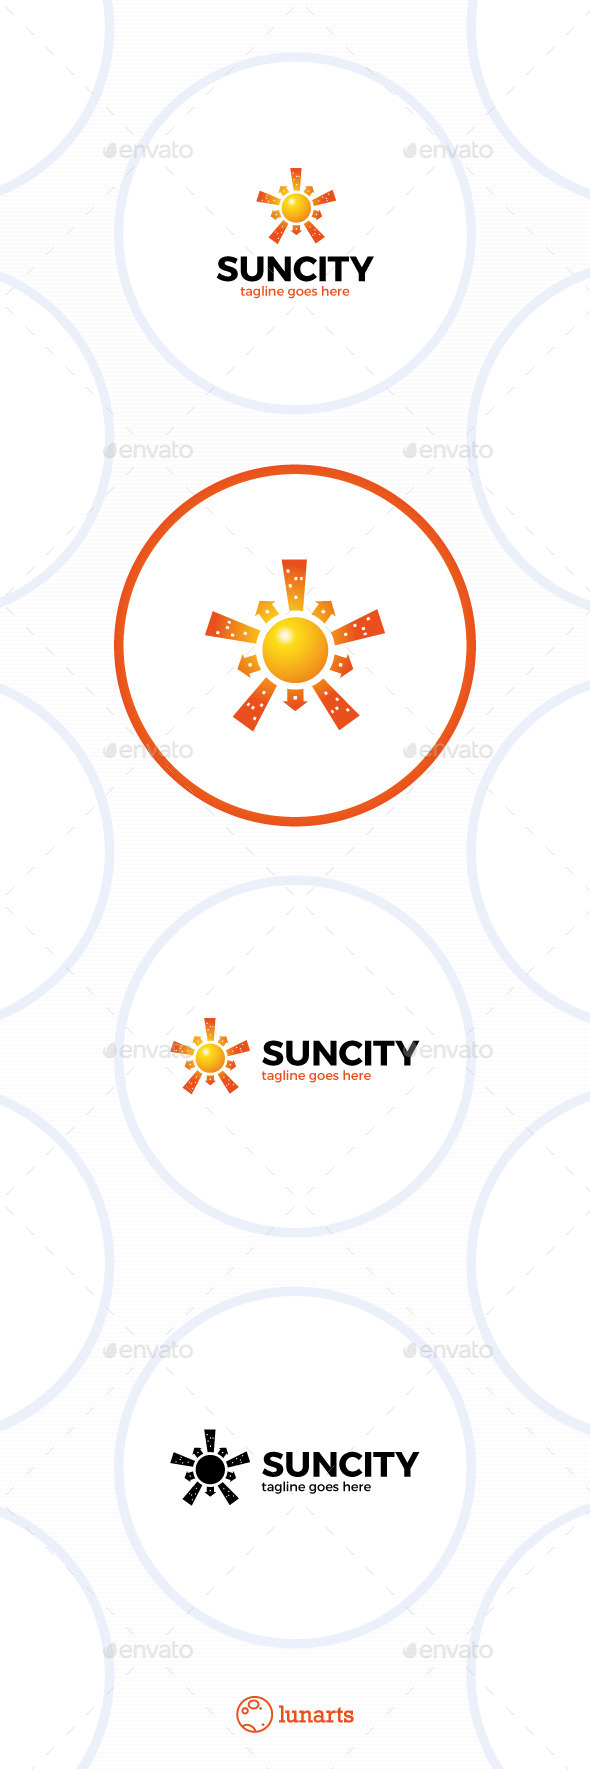 Sun City Logo - Star Town